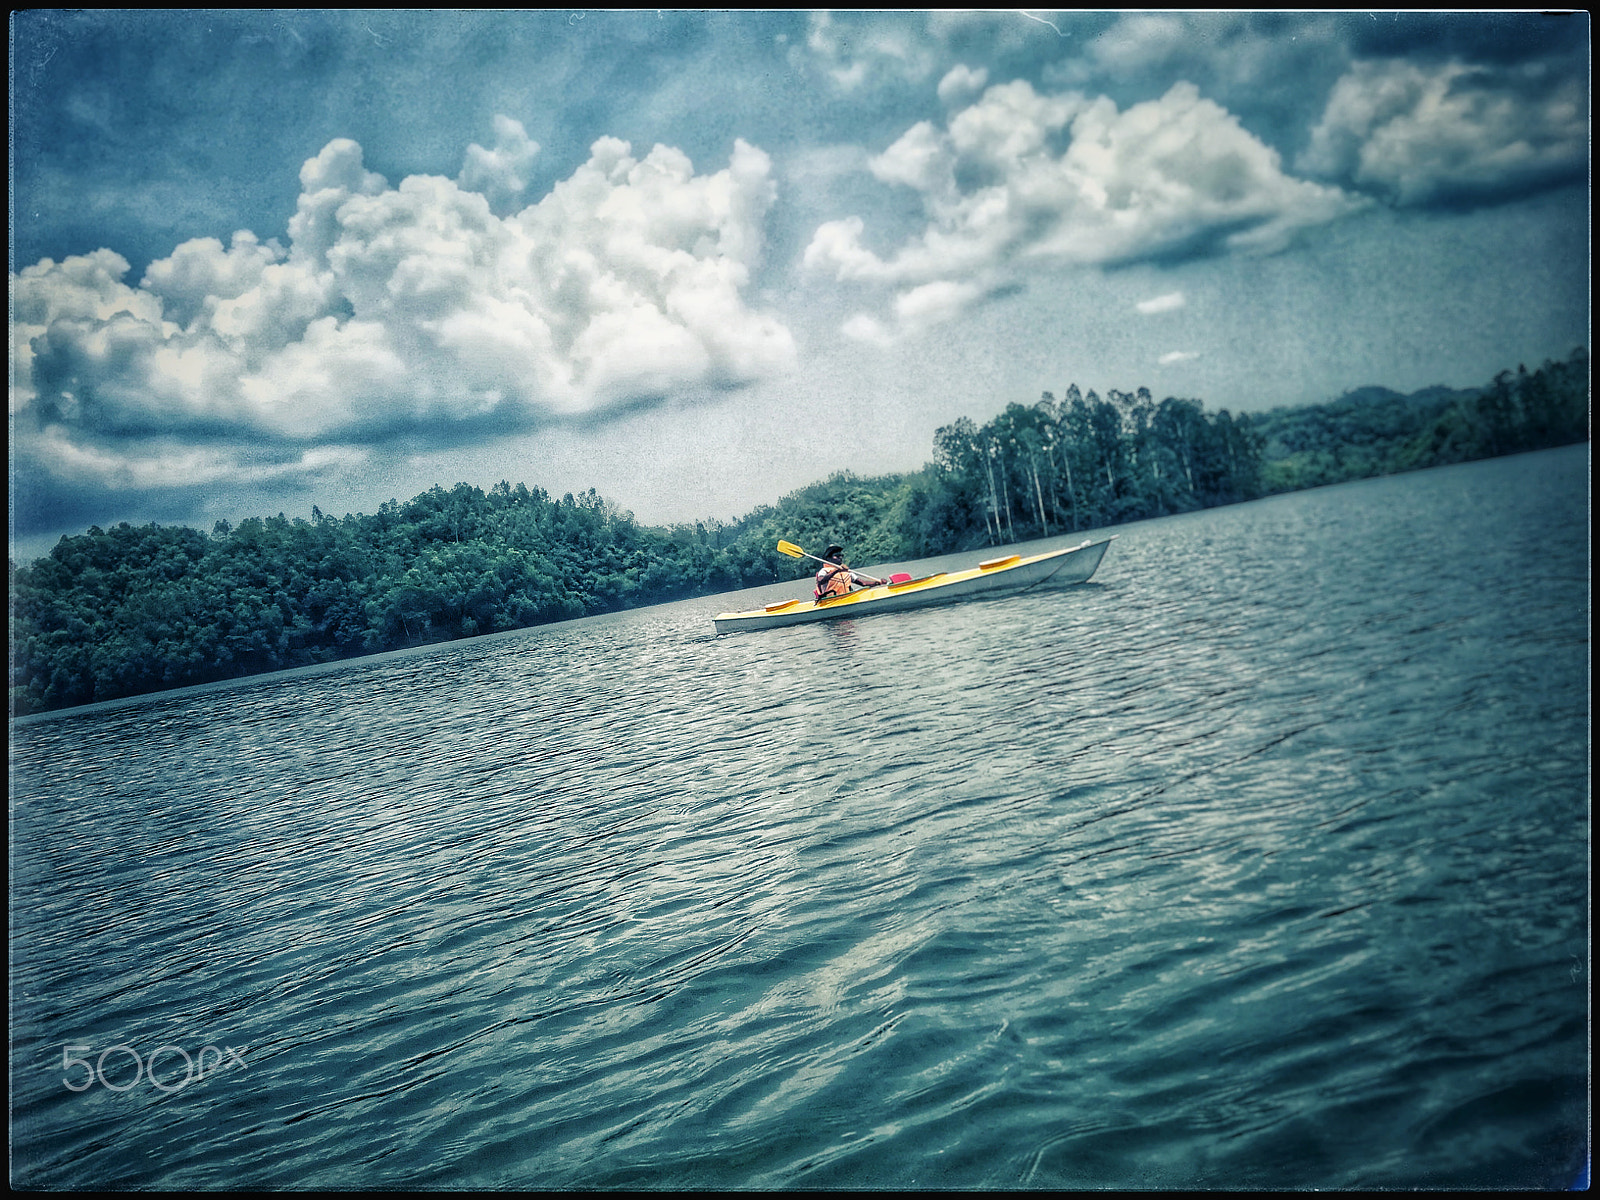 HUAWEI GT3 sample photo. Kayaking photography